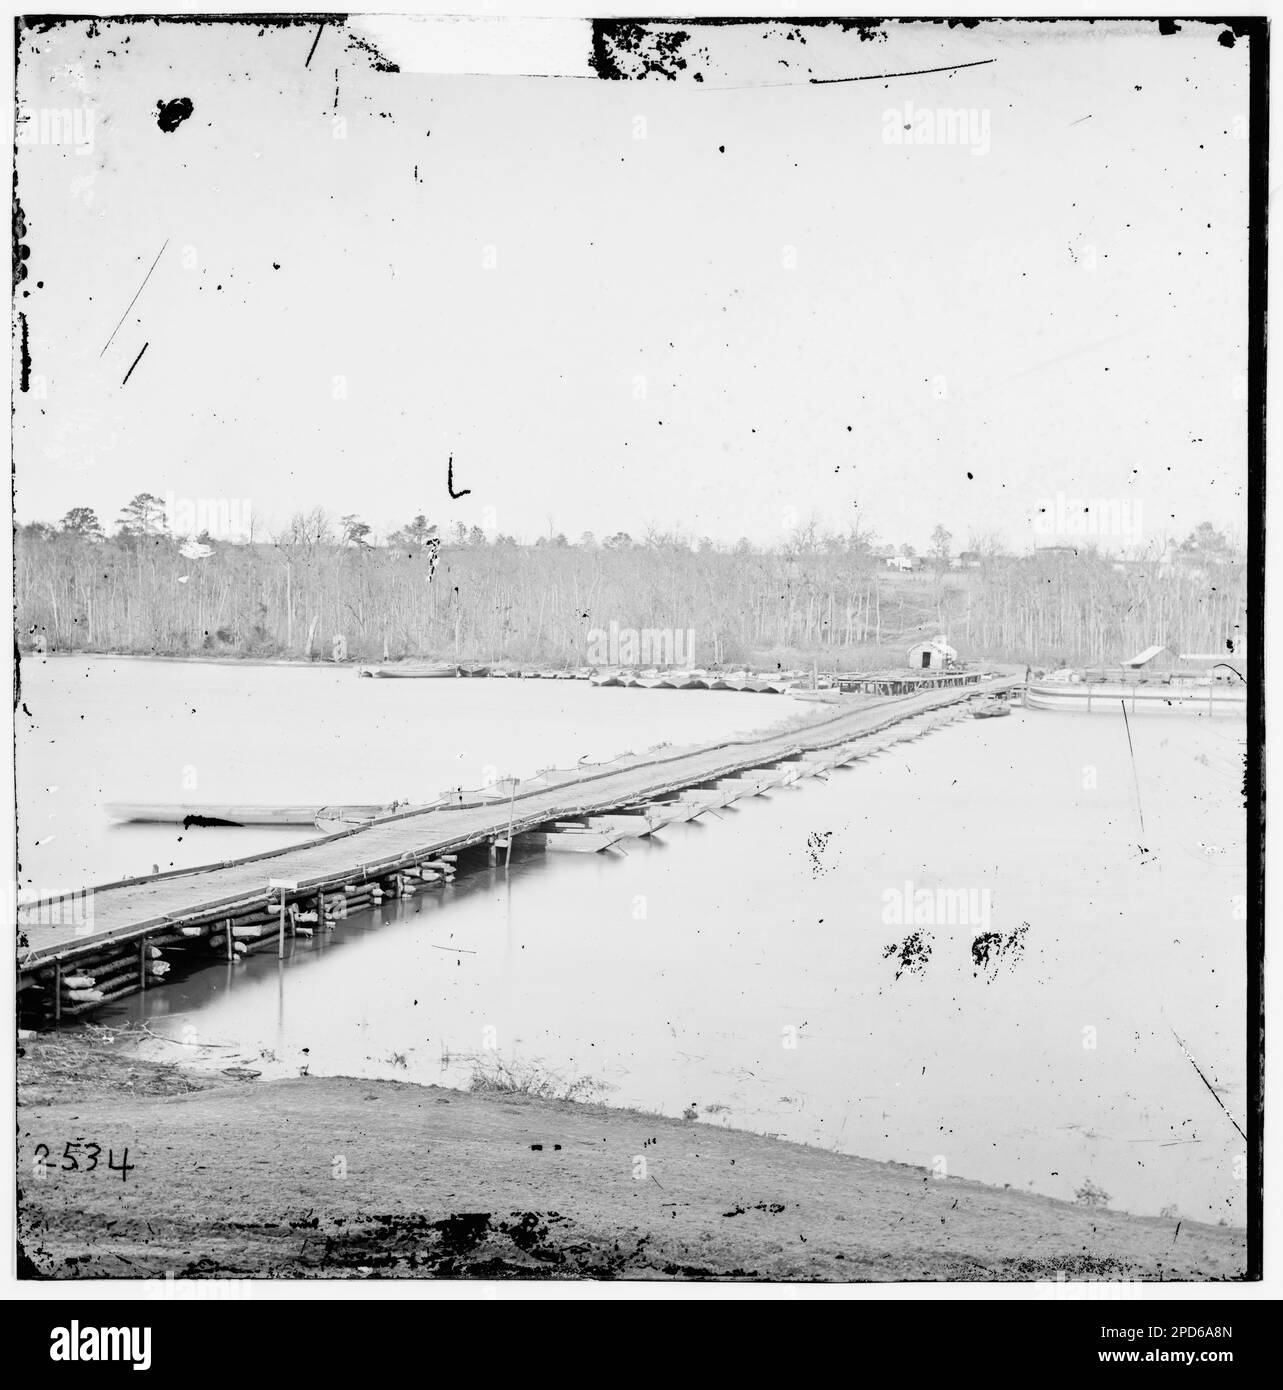 Ponte sul fiume James. Fotografie della guerra civile, 1861-1865 . Stati Uniti, Storia, Guerra civile, 1861-1865. Foto Stock